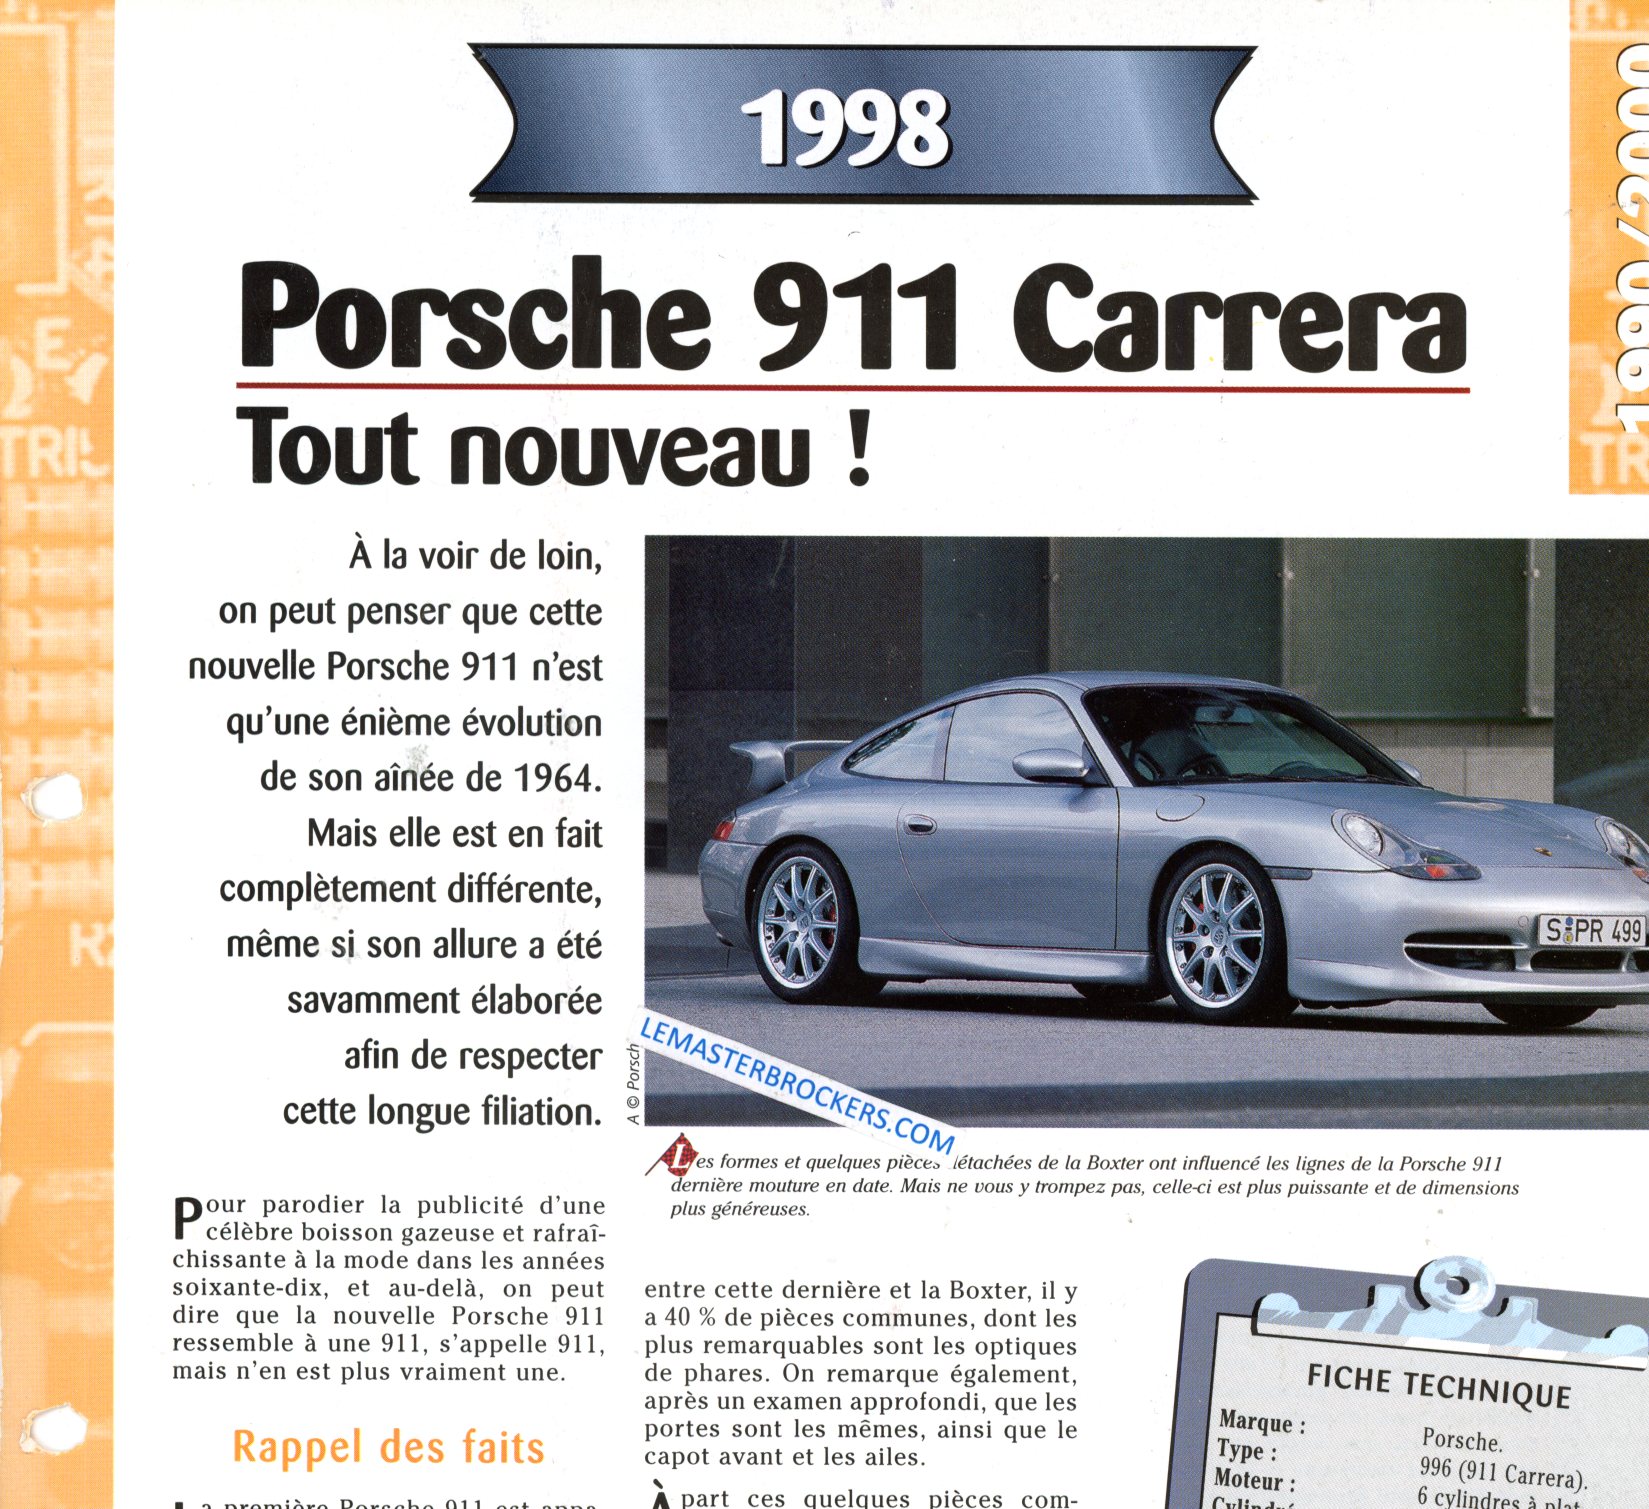 PORSCHE 911 CARRERA 1998 FICHE TECHNIQUE